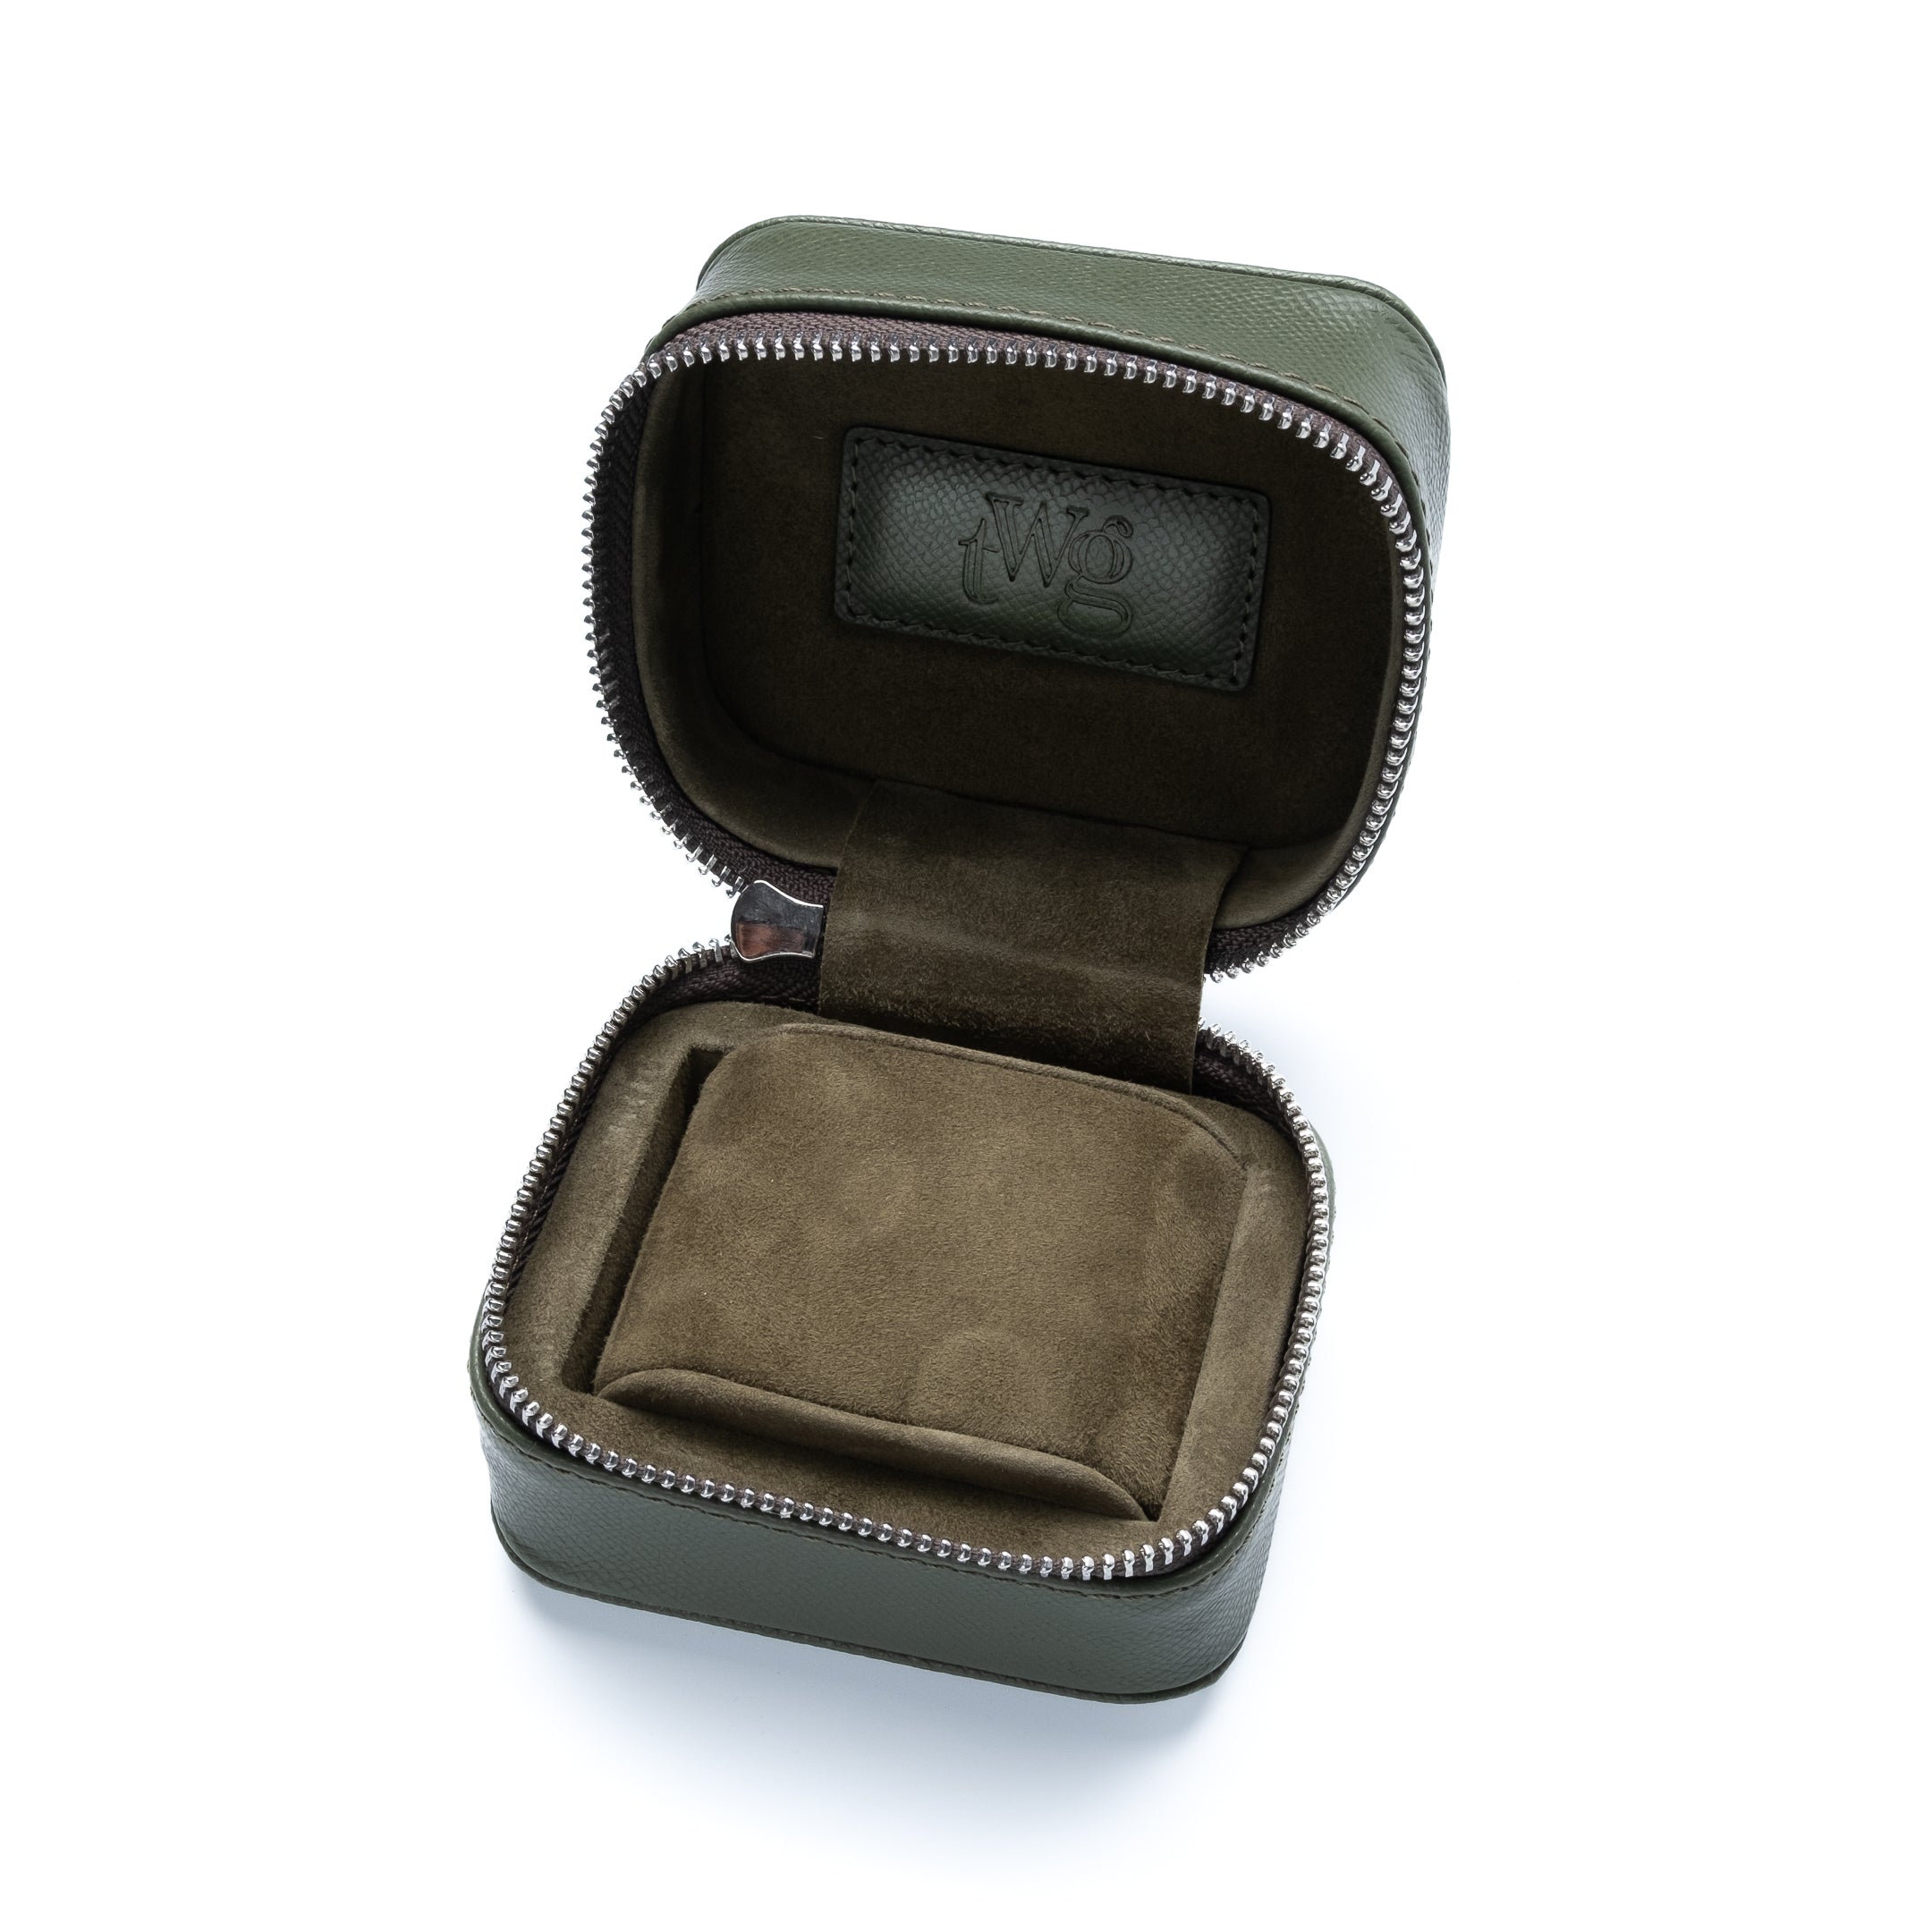 Uhrenbox "Zip-Case" für 1 Uhr, Grün